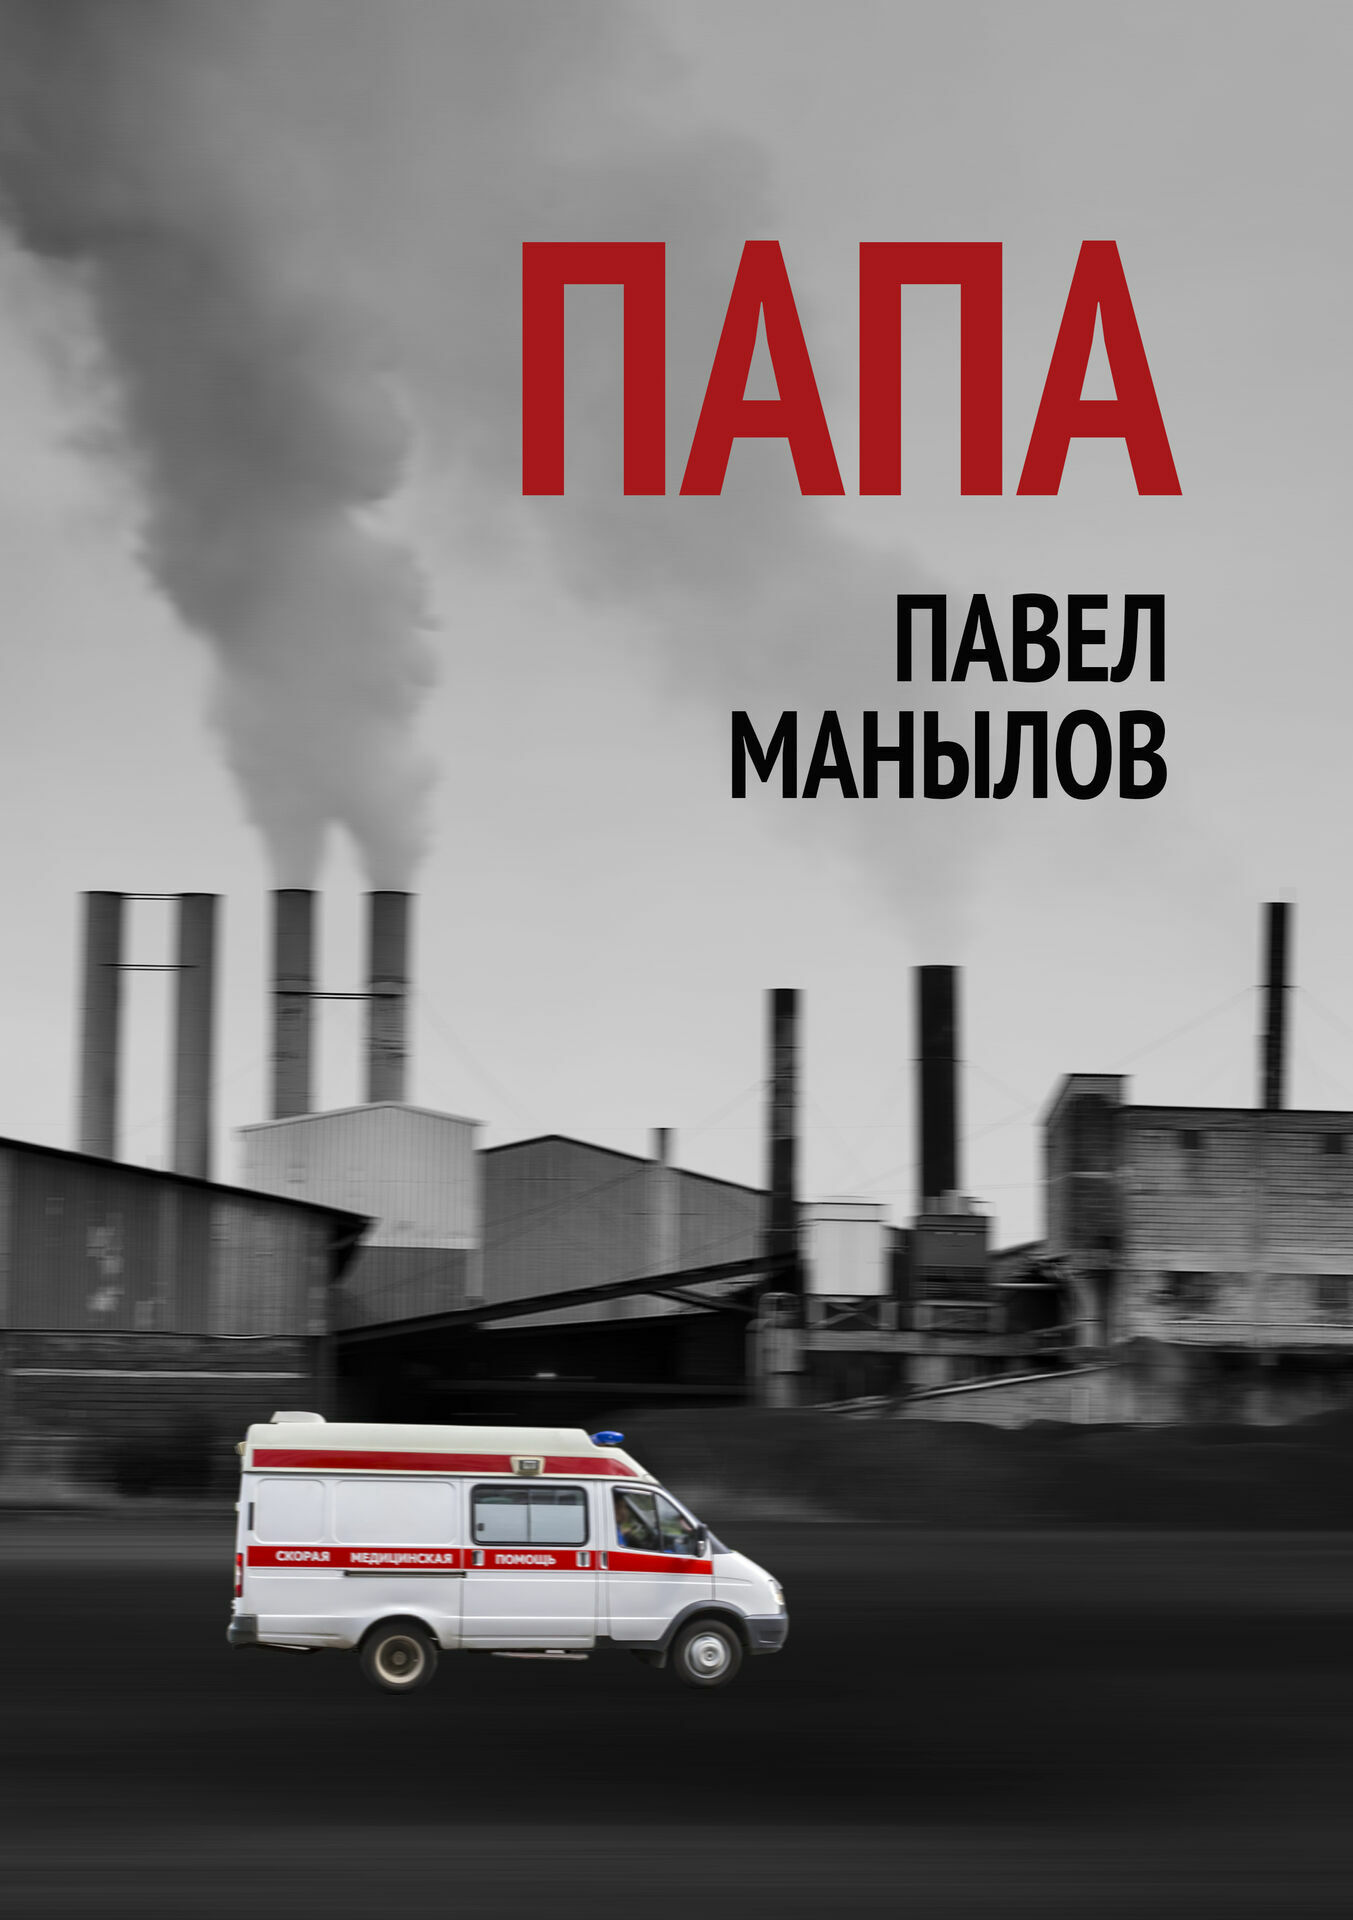 Павел Манылов дебютировал английским романом о российской провинции